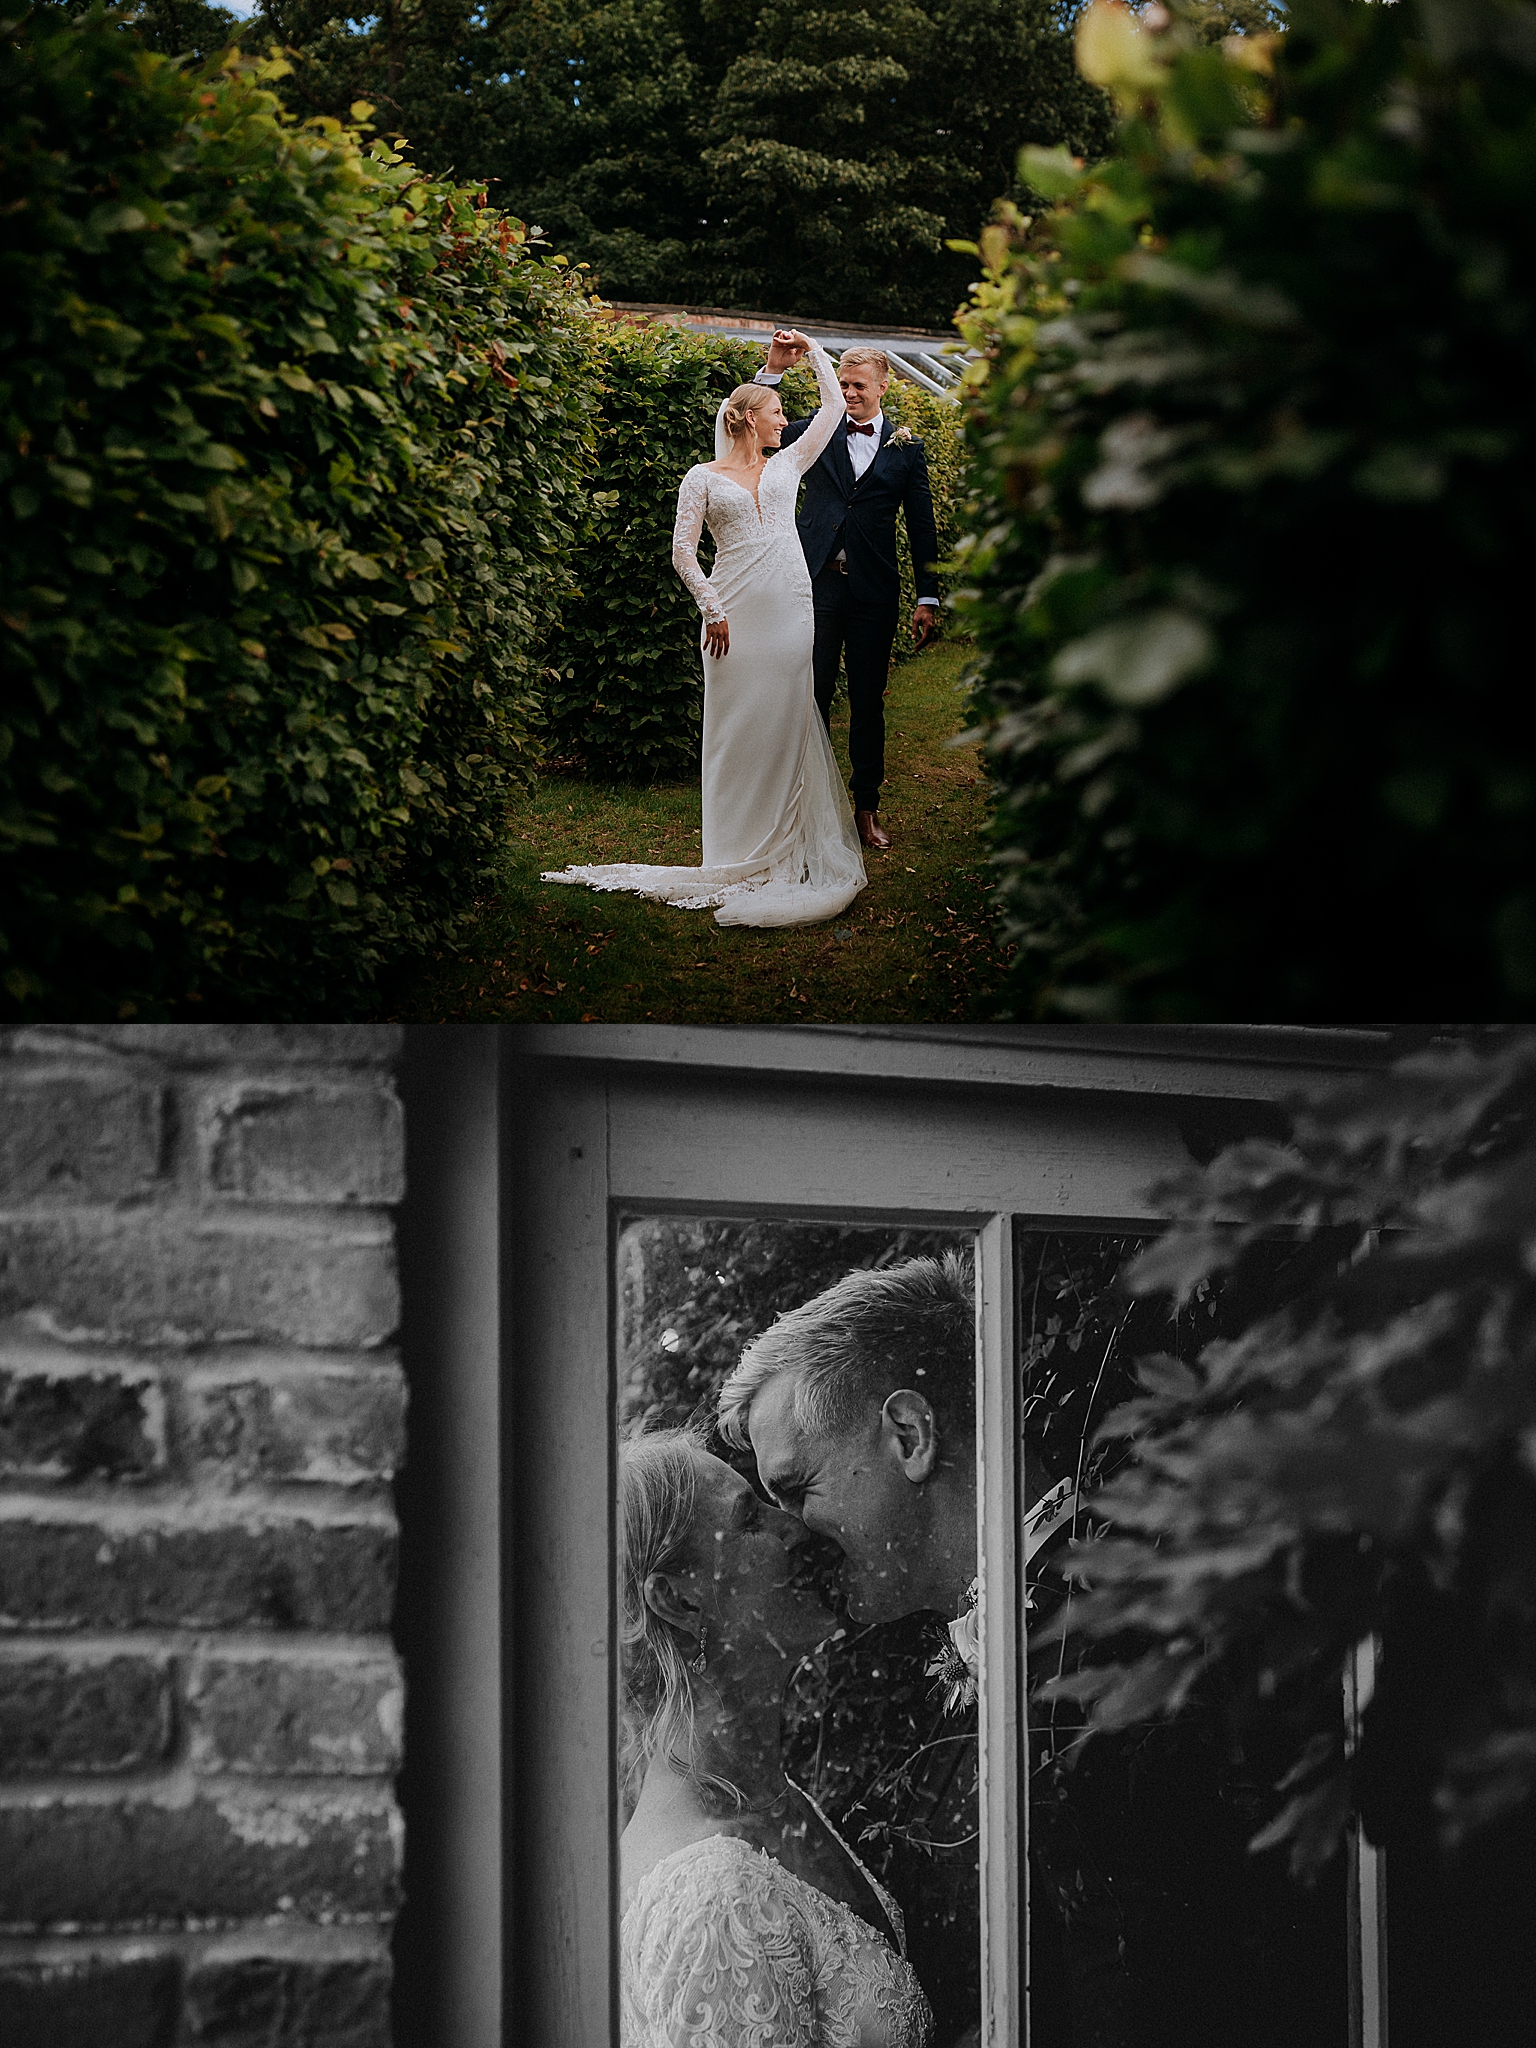 Creative Wedding Photography - Wedding Couple